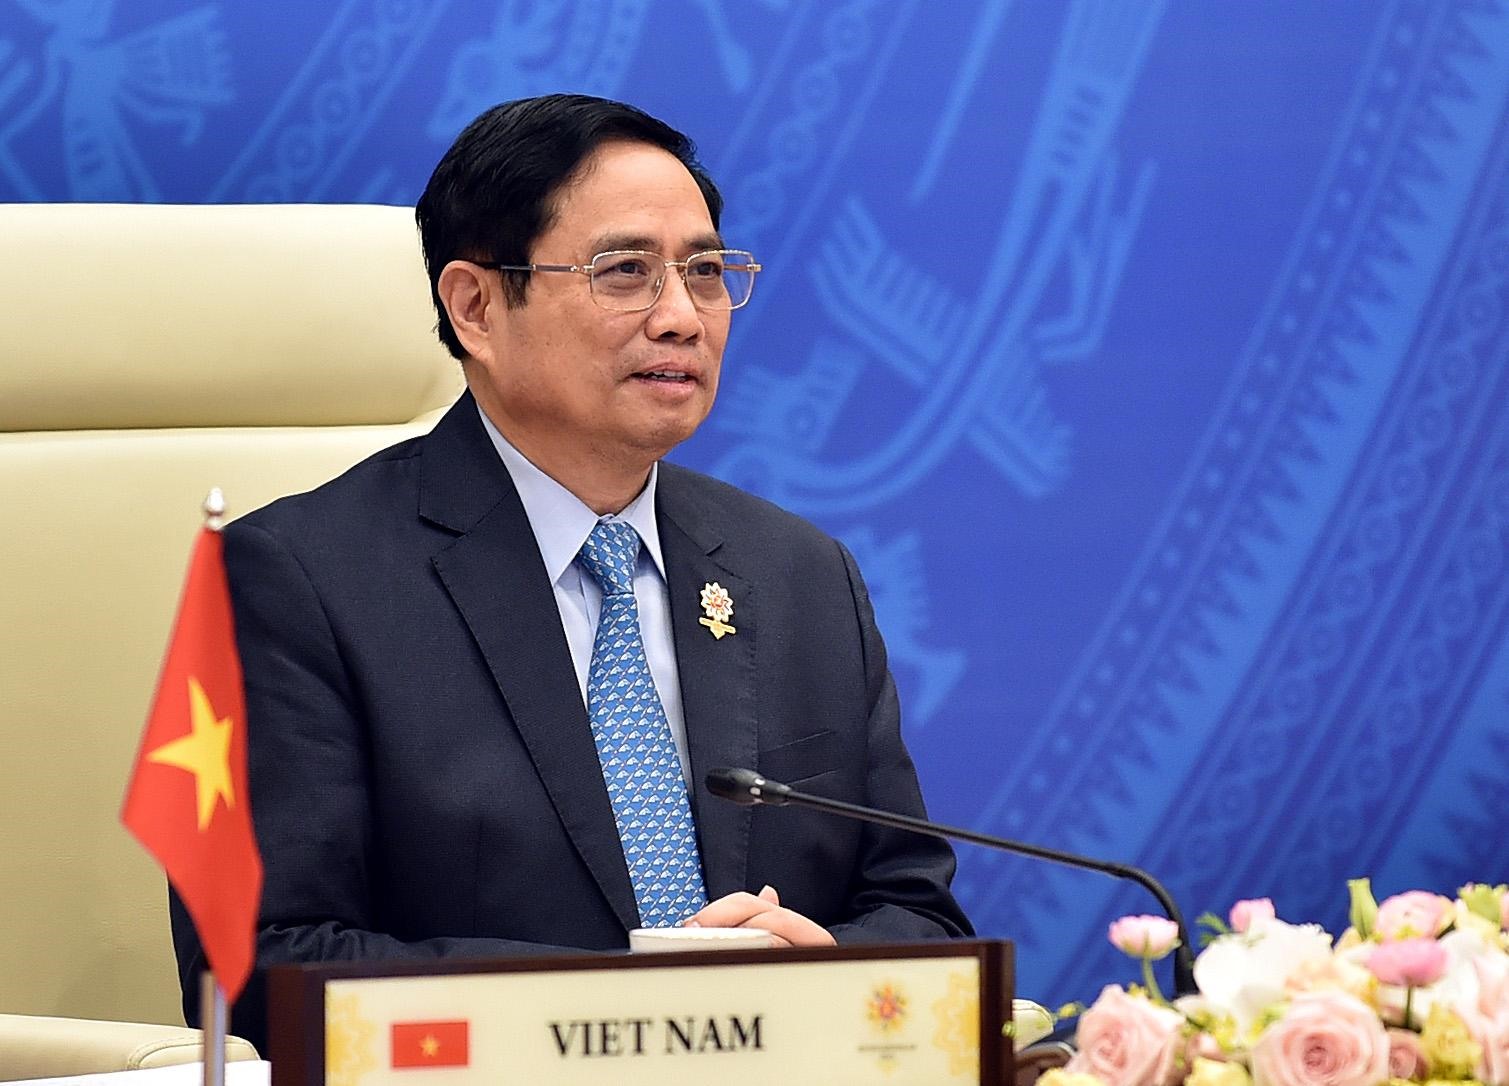 Thủ tướng Phạm Minh Chính: “ASEAN cần kiên định lập trường nguyên tắc về Biển Đông“. Ảnh VGP/Nhật Bắc